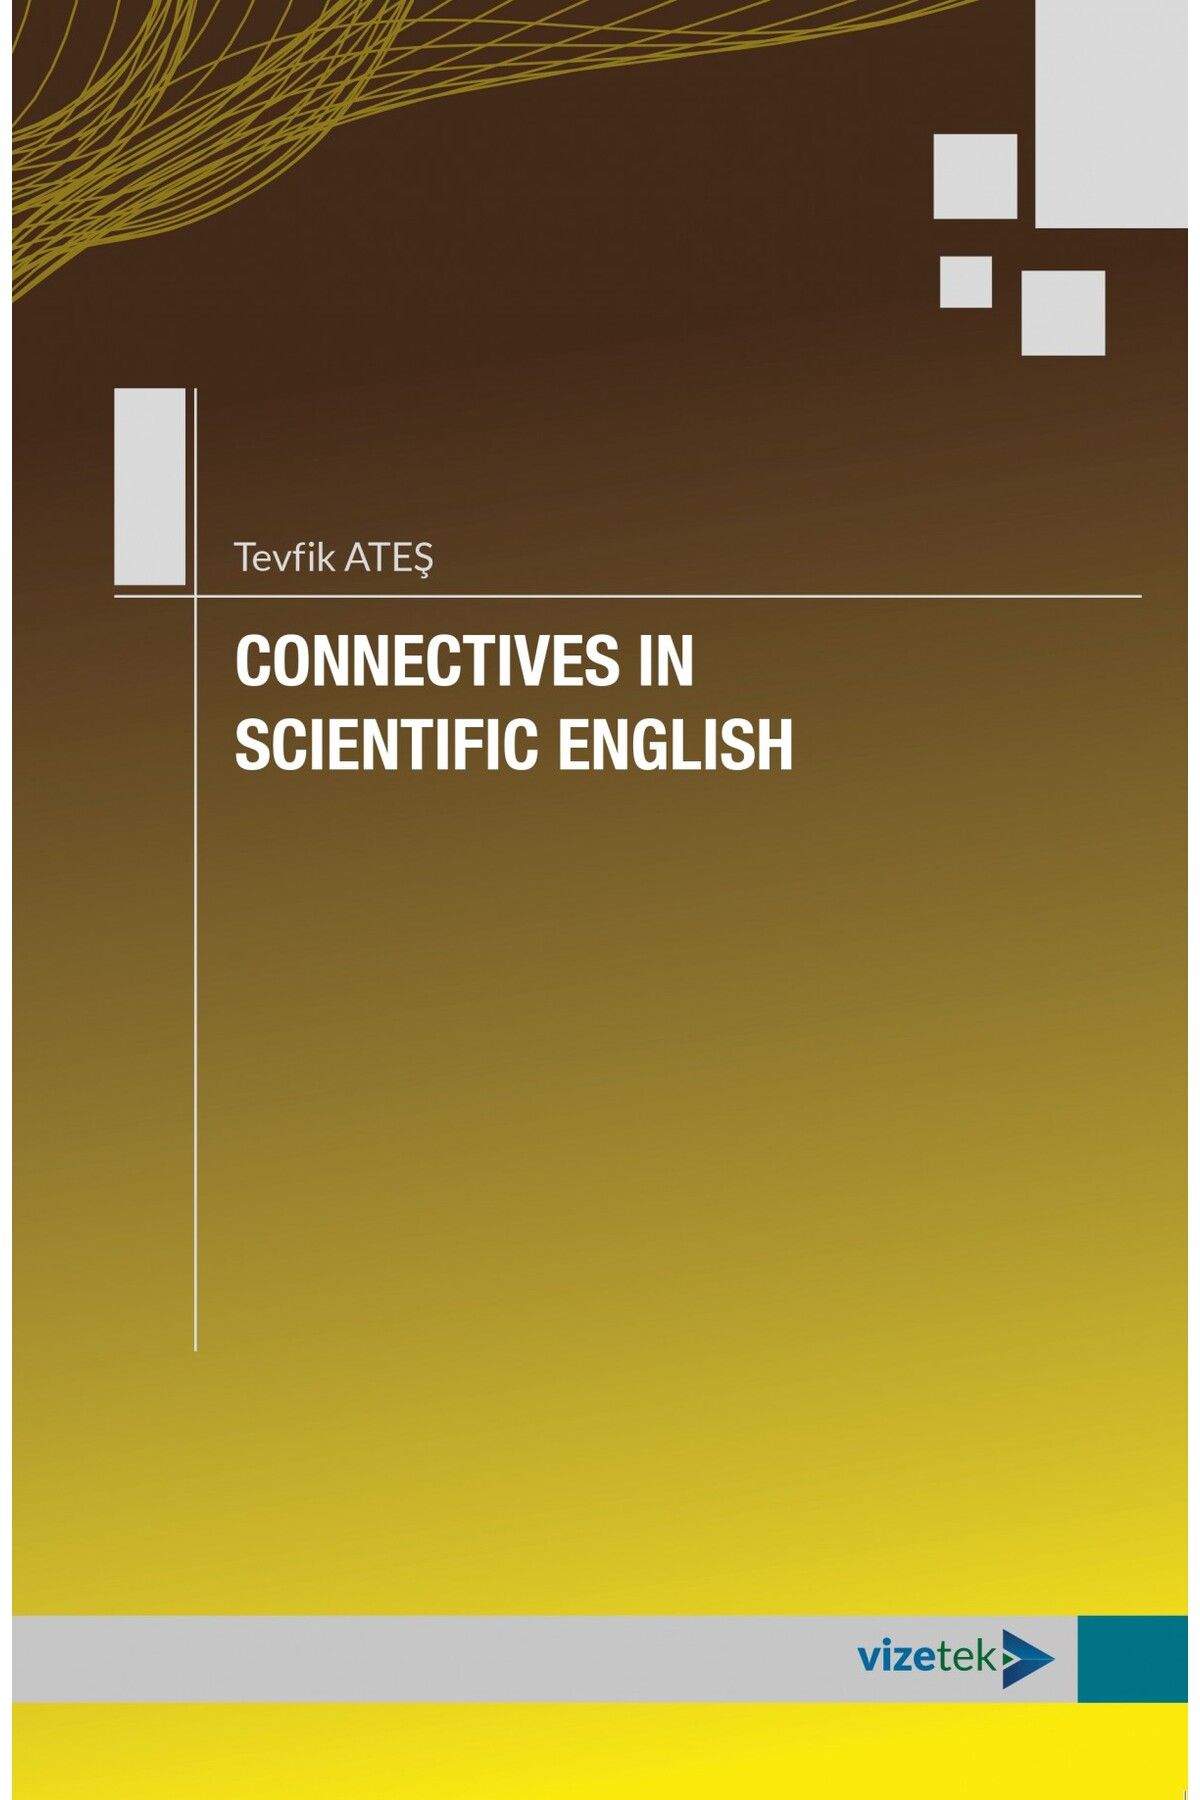 Vizetek Yayıncılık Connectives in Scientific English